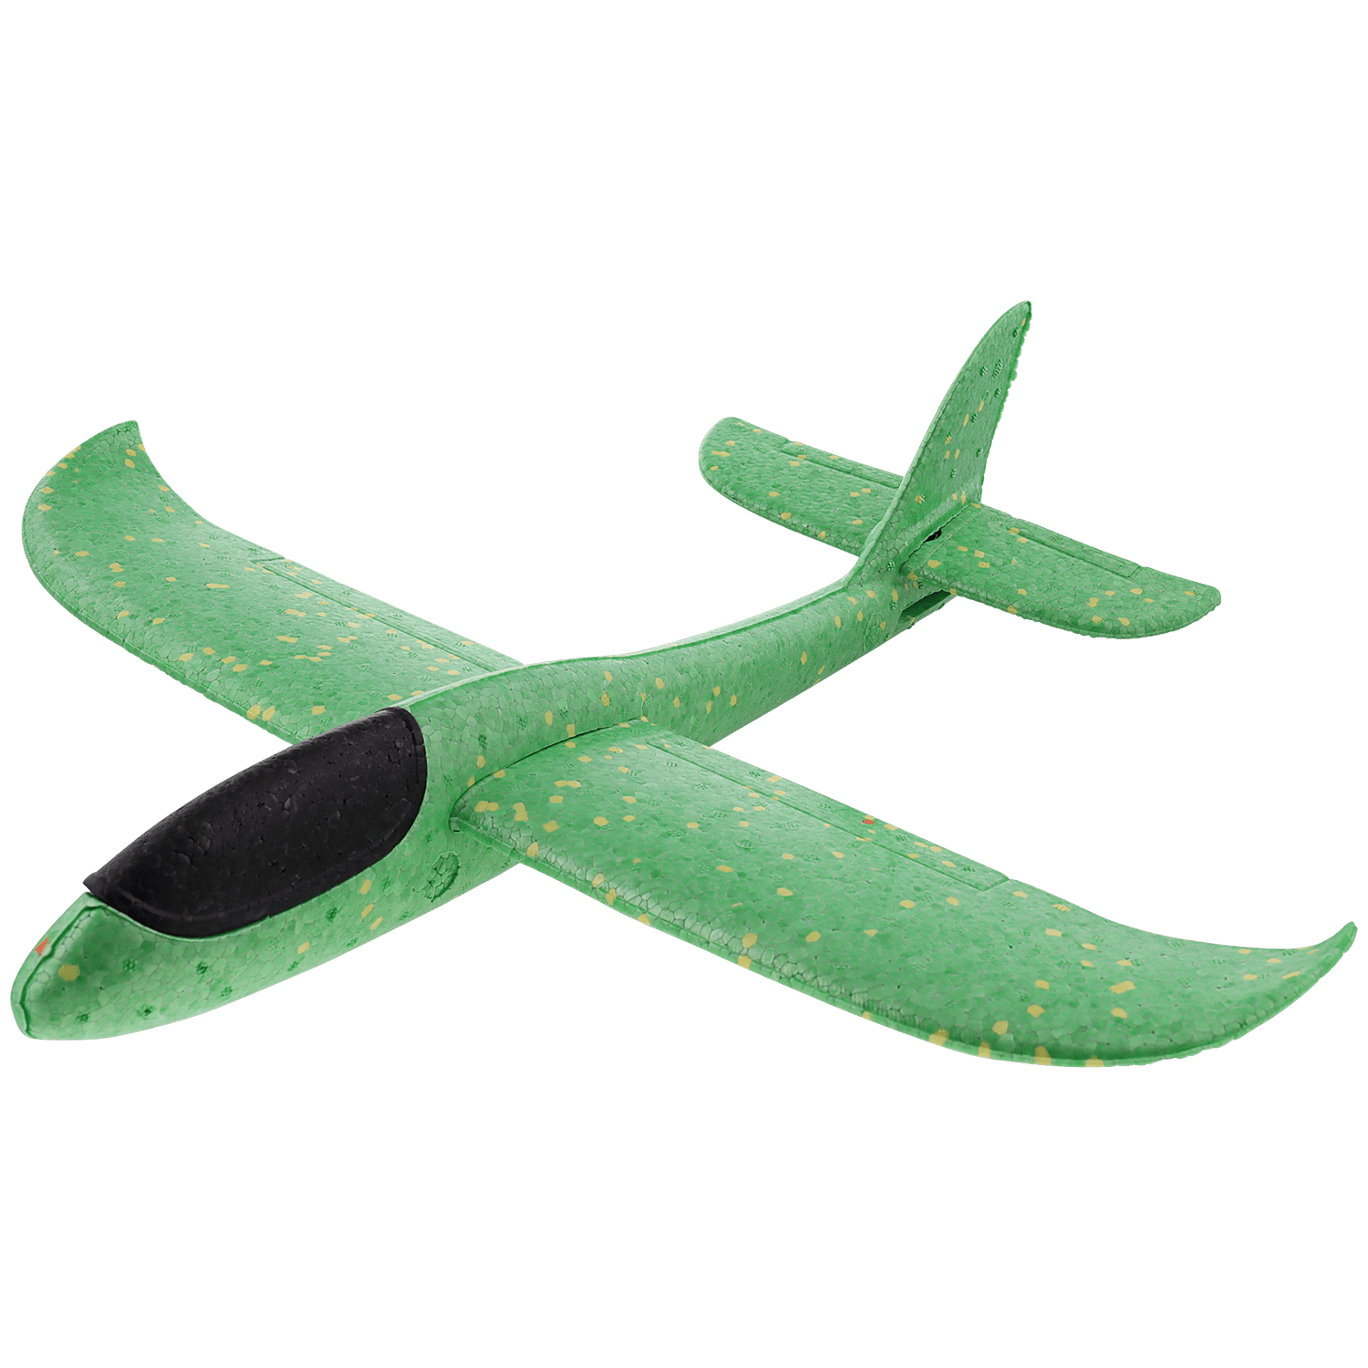 Ogquaton Premium Qualité 38cm Main Lancer Avion Avion Planeur Planeur Modèle Enfants Jouet Vert 